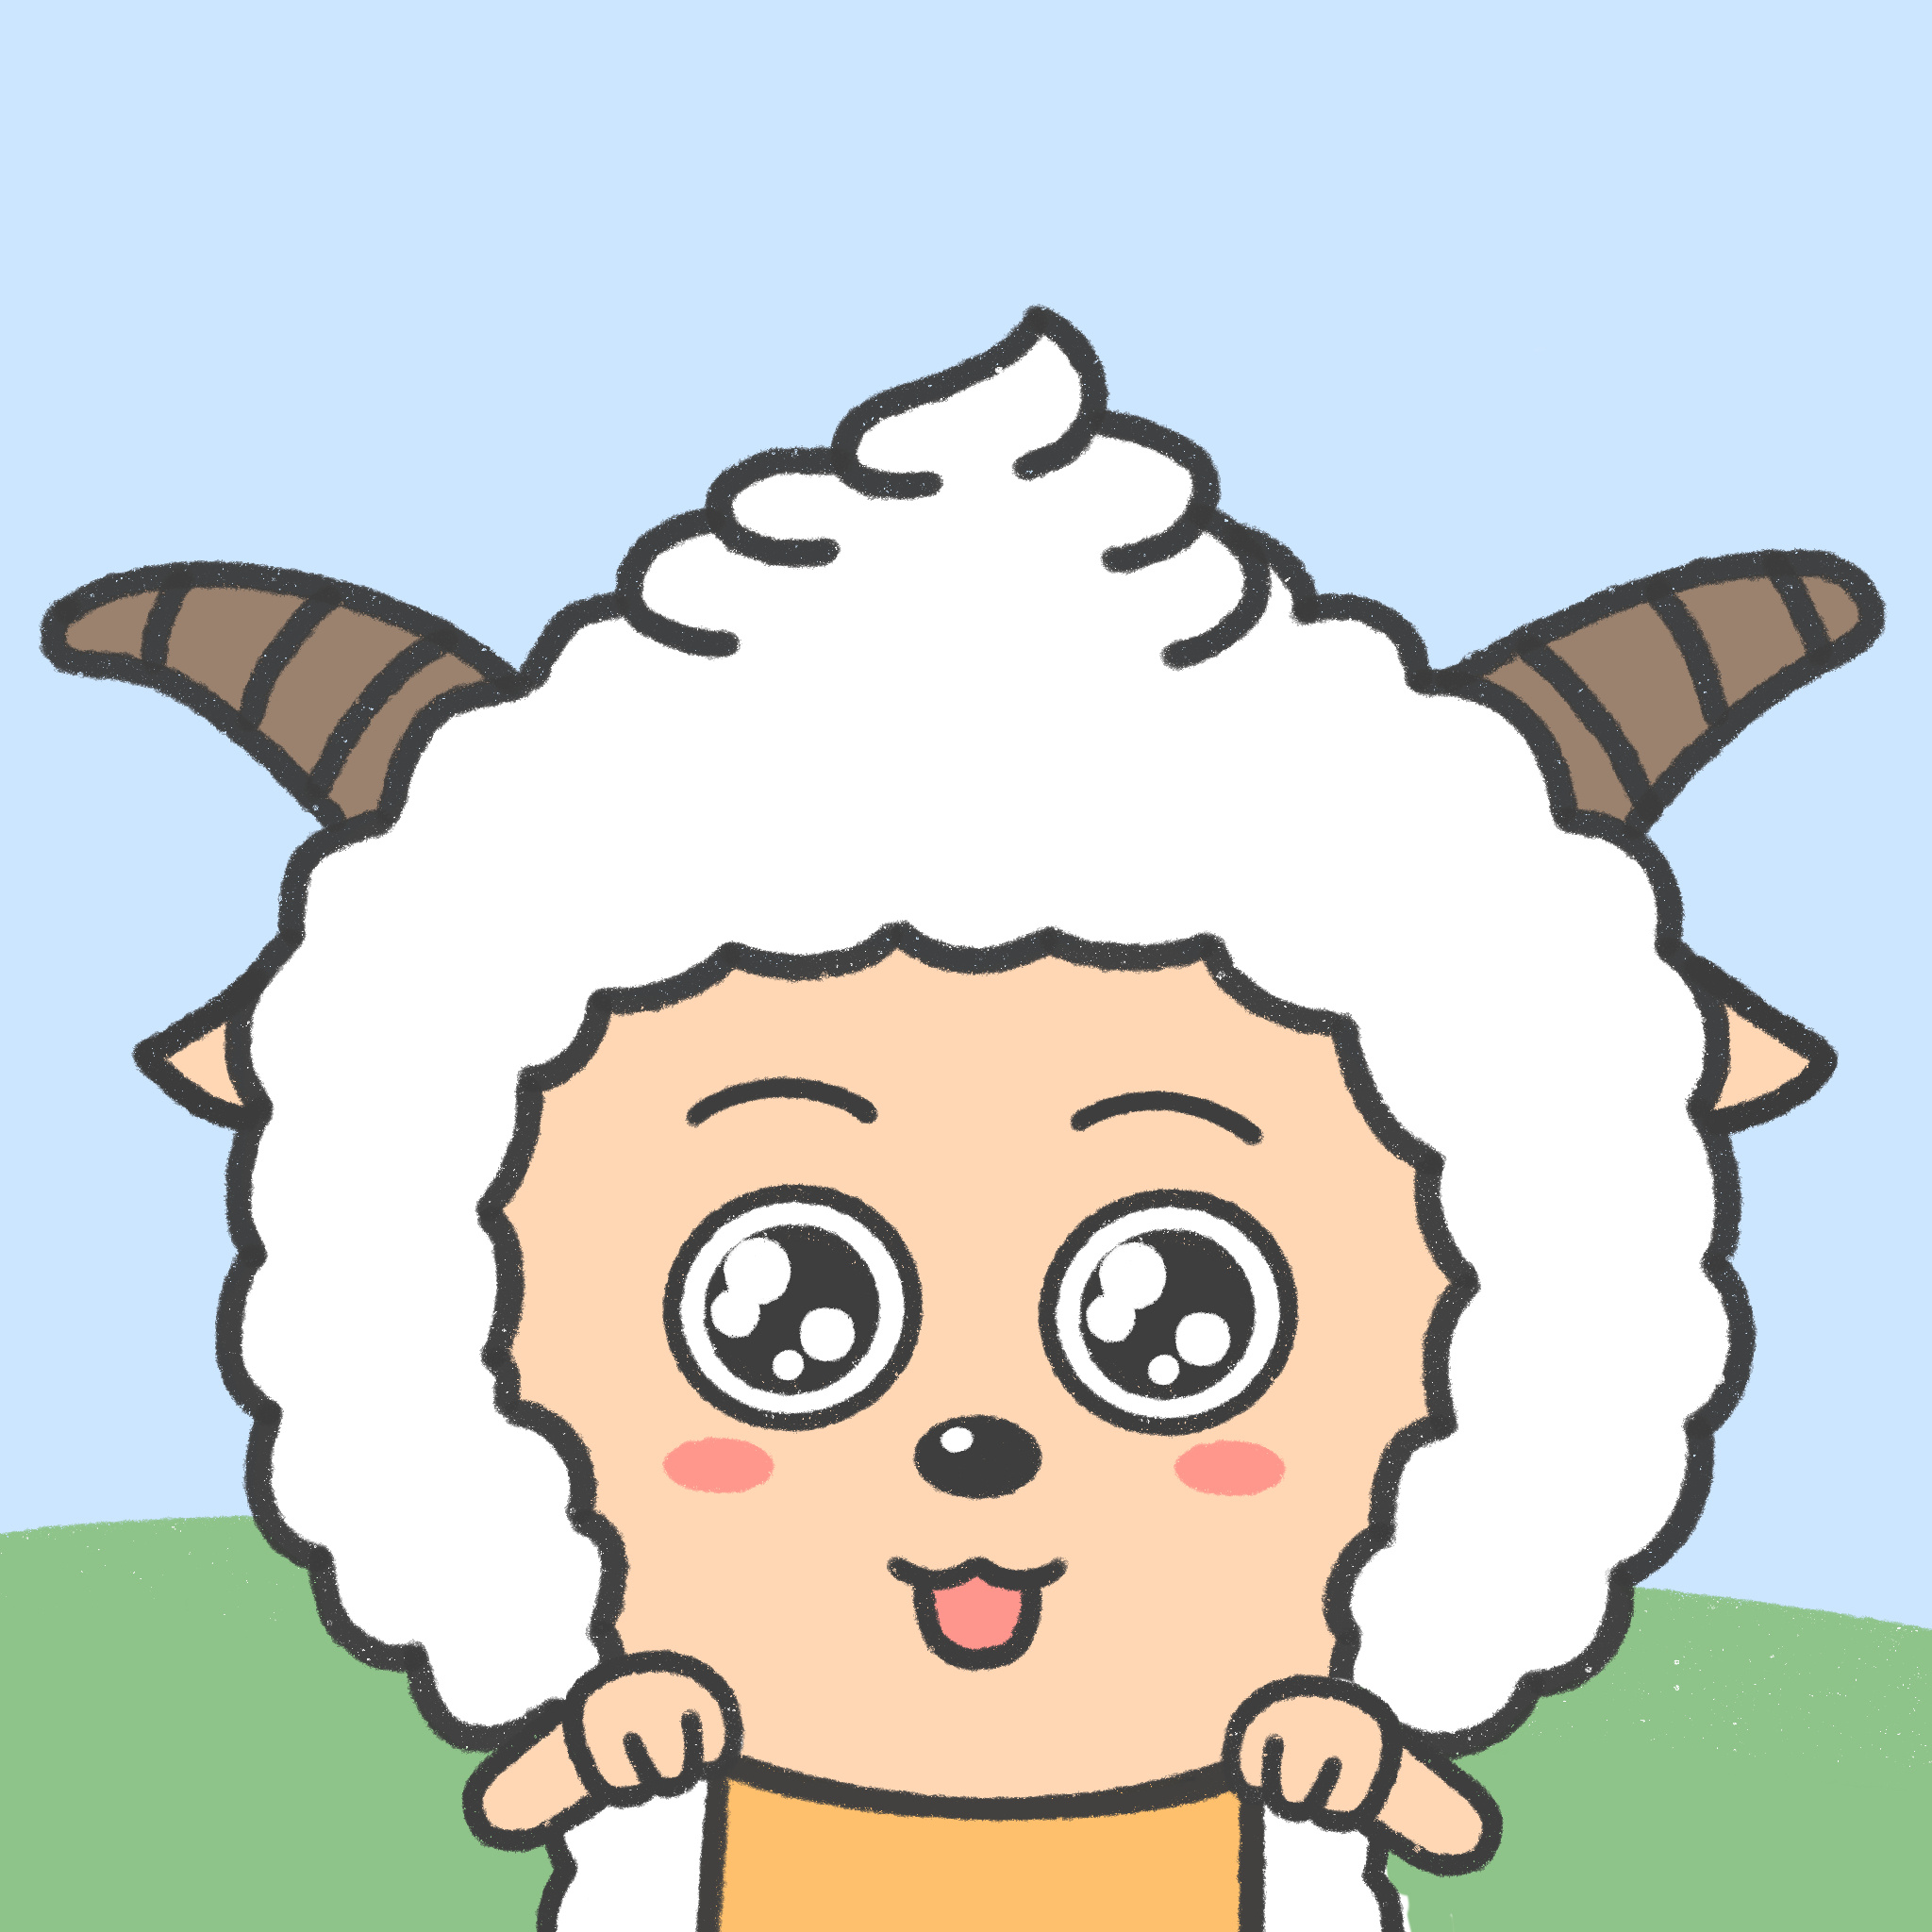 可爱小动物羊图片大全-可爱小动物羊高清图片下载-觅知网